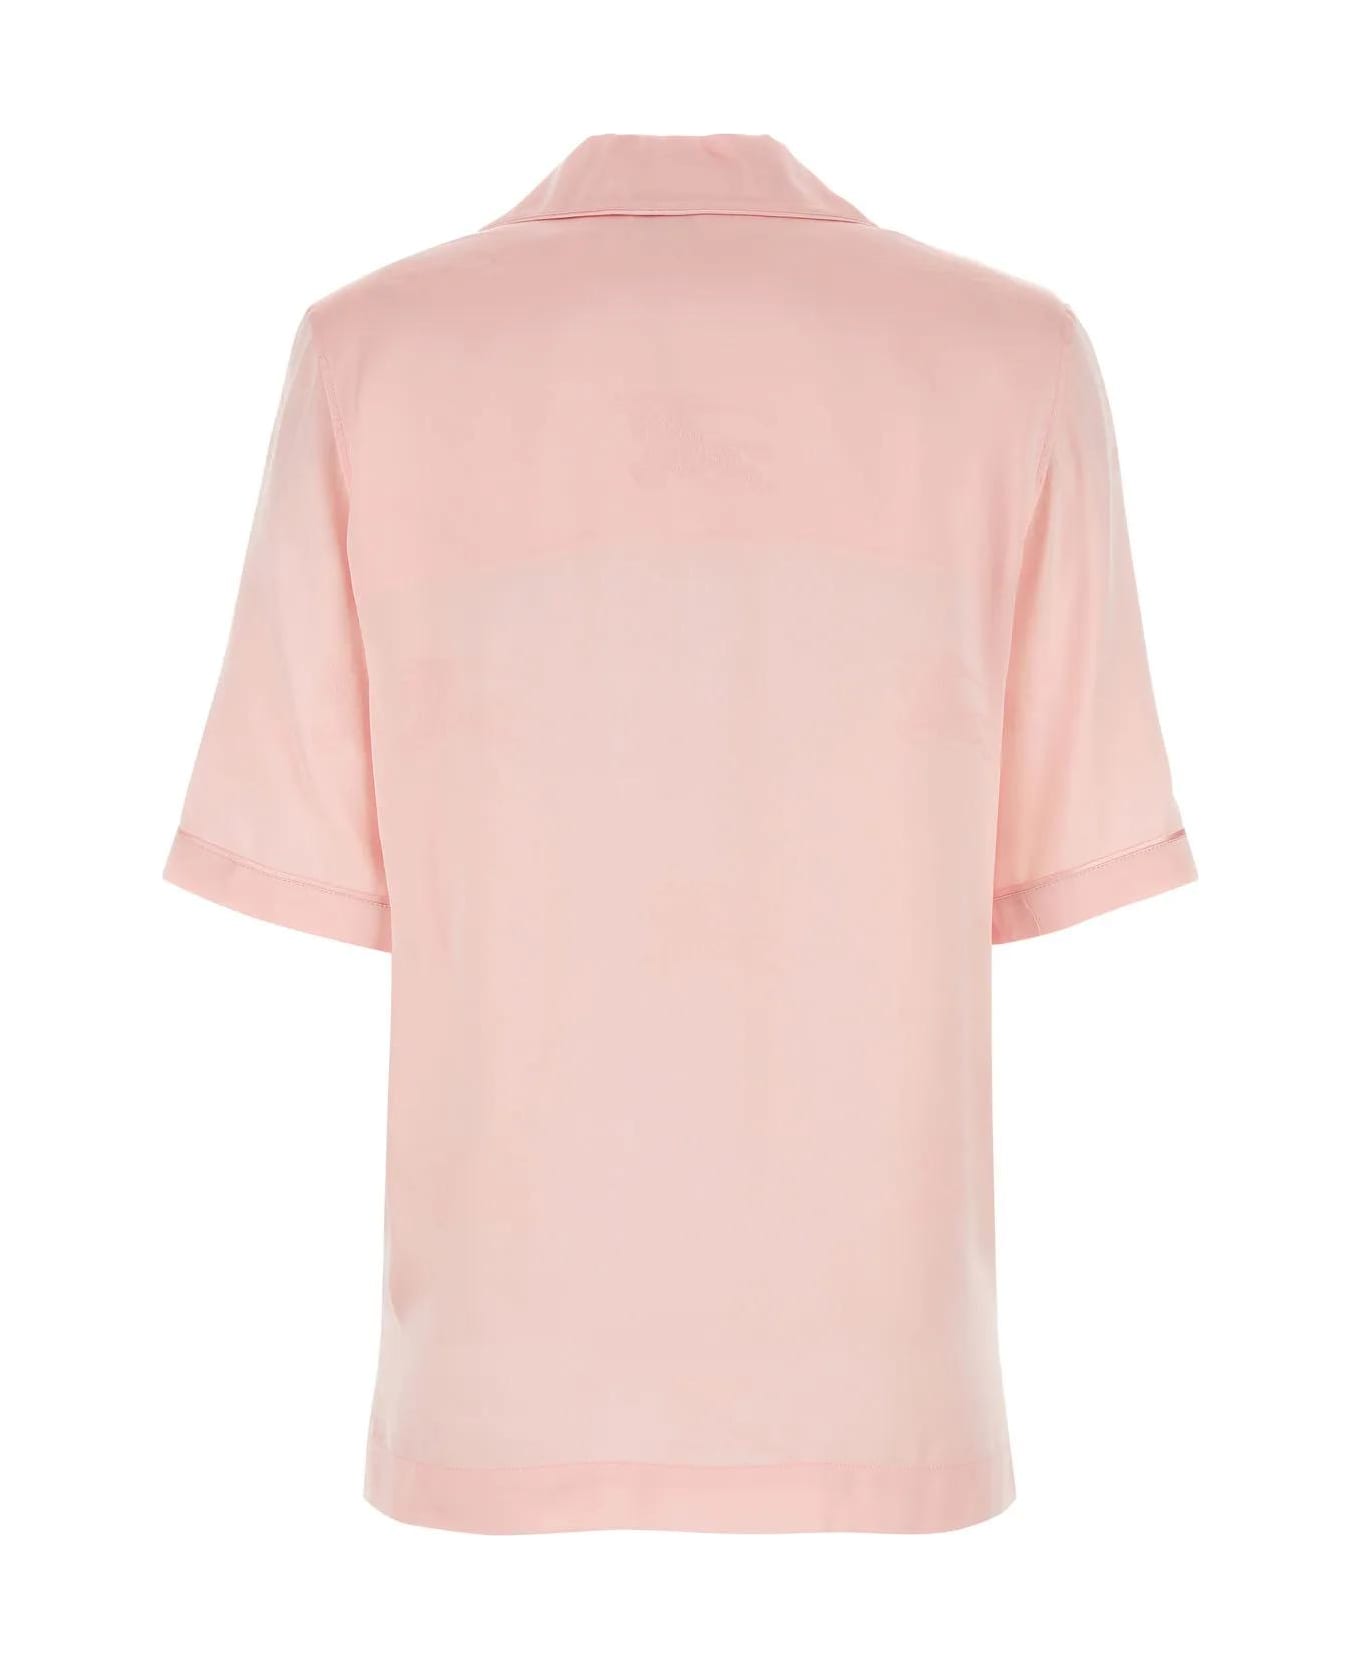 Burberry Pastel Pink Satin Shirt - Pink